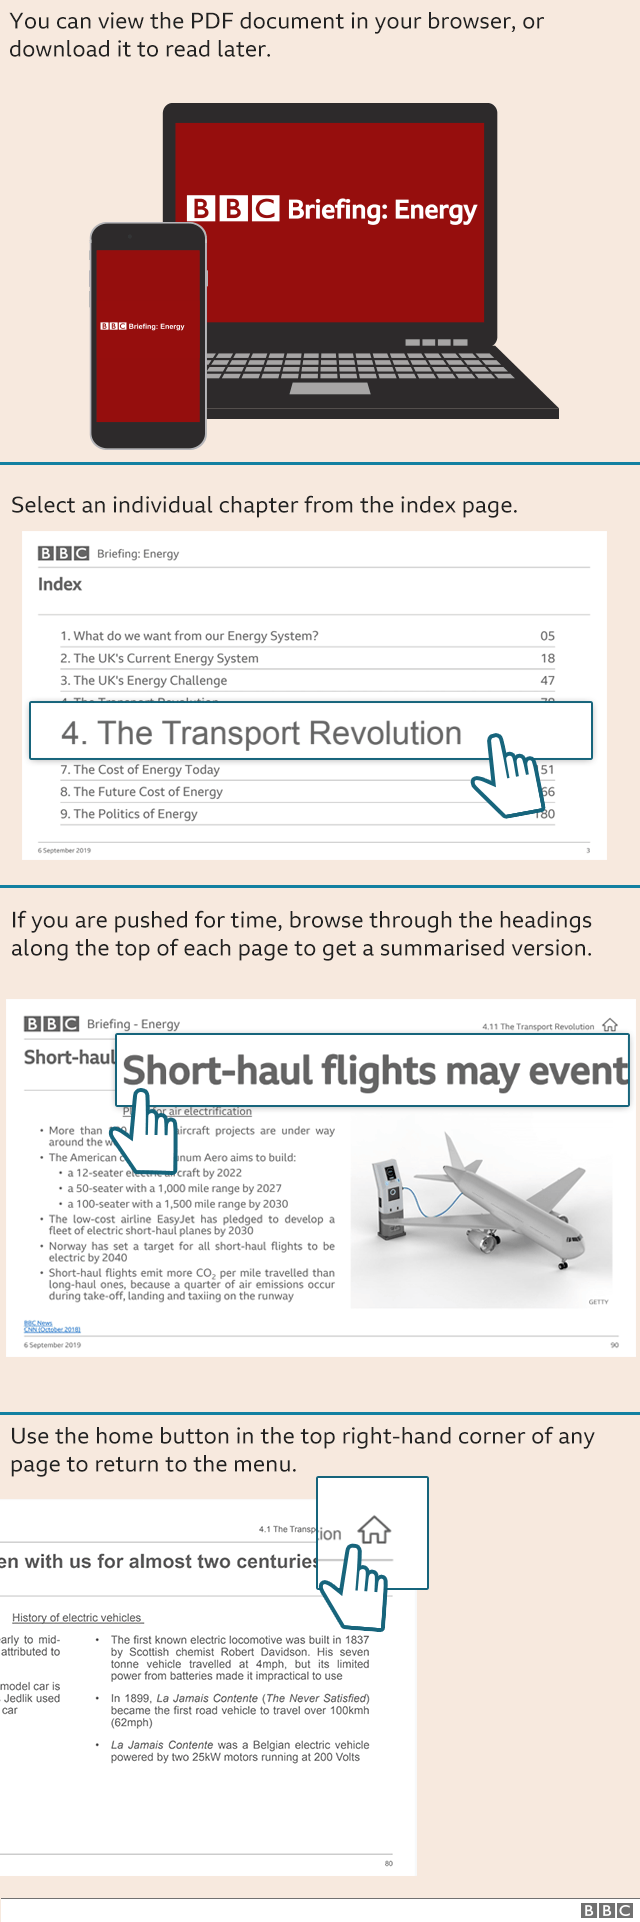 Инструкции по навигации в PDF-документе BBC Briefing